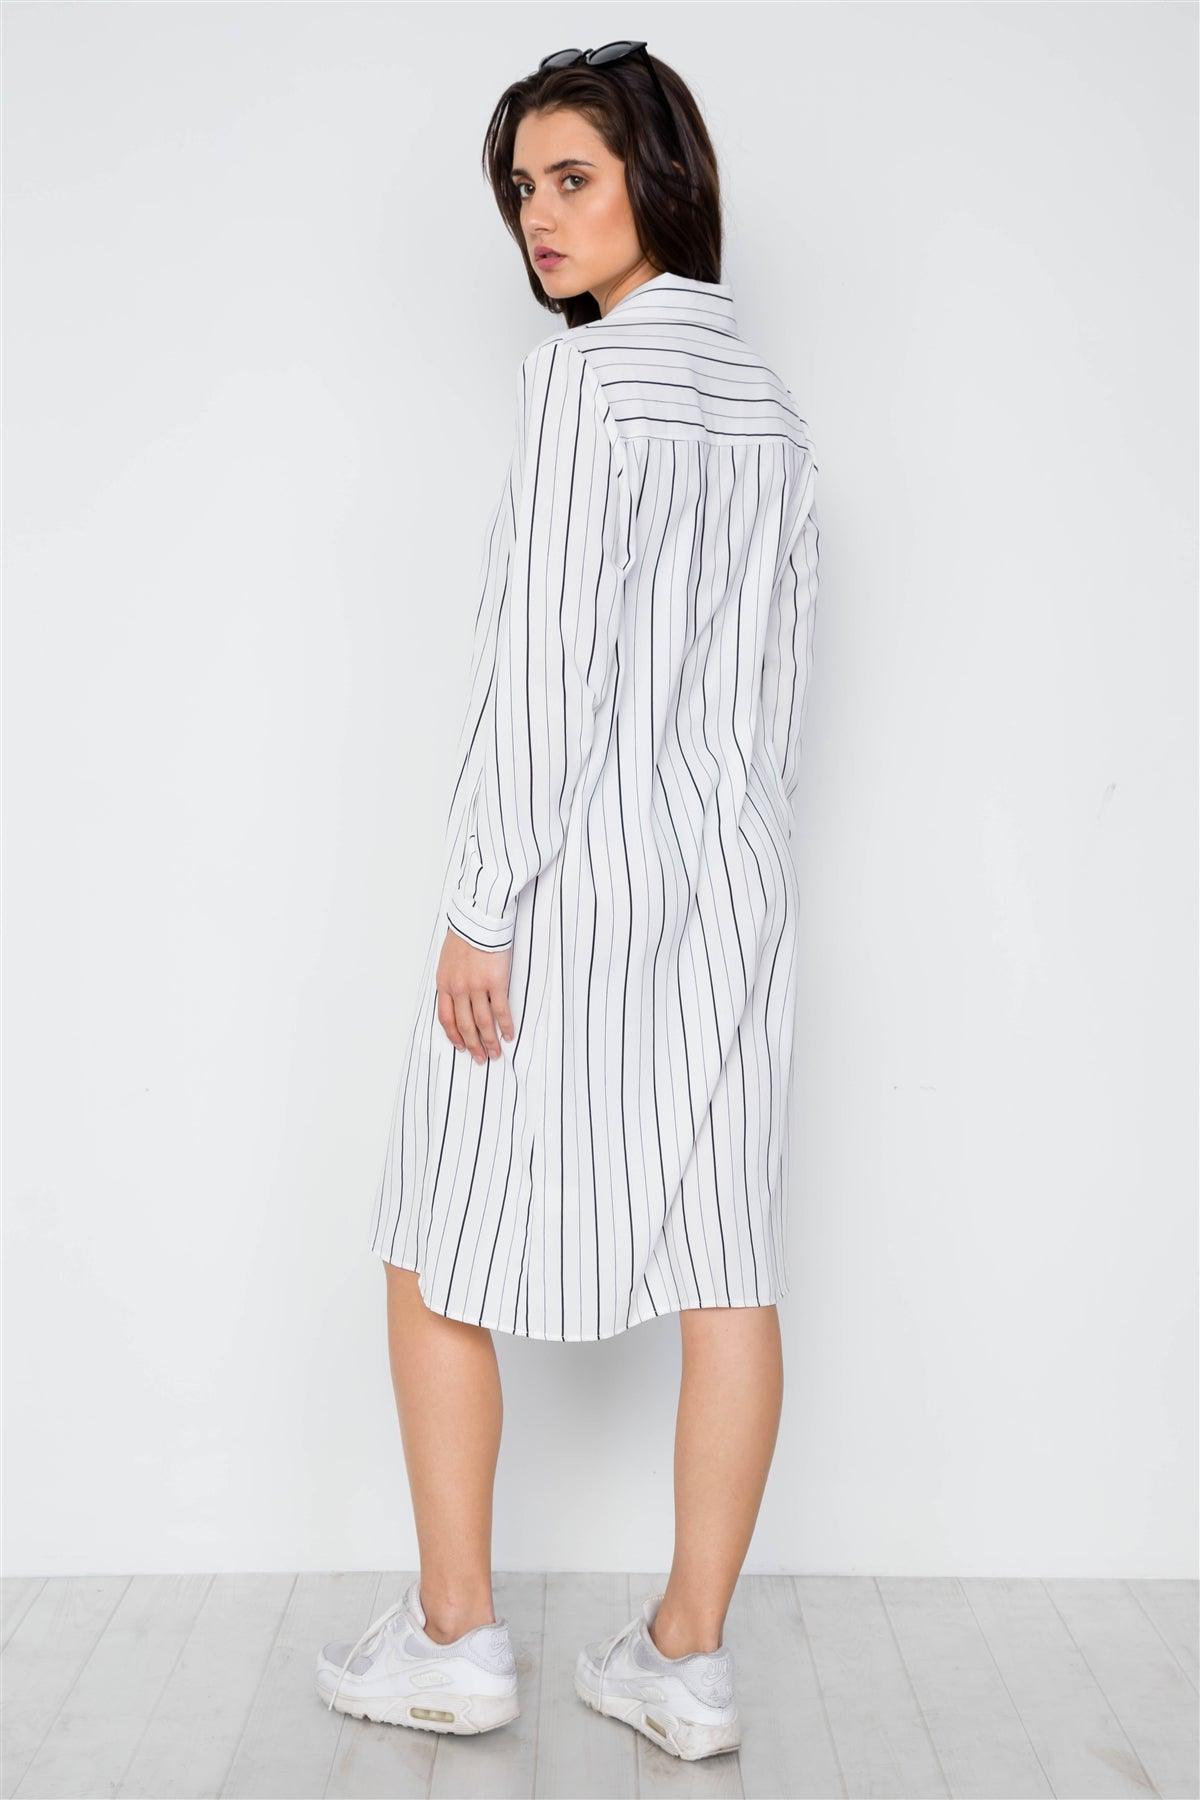 White Stripe Button Down Blouse Shirt Dress / 2-2-2